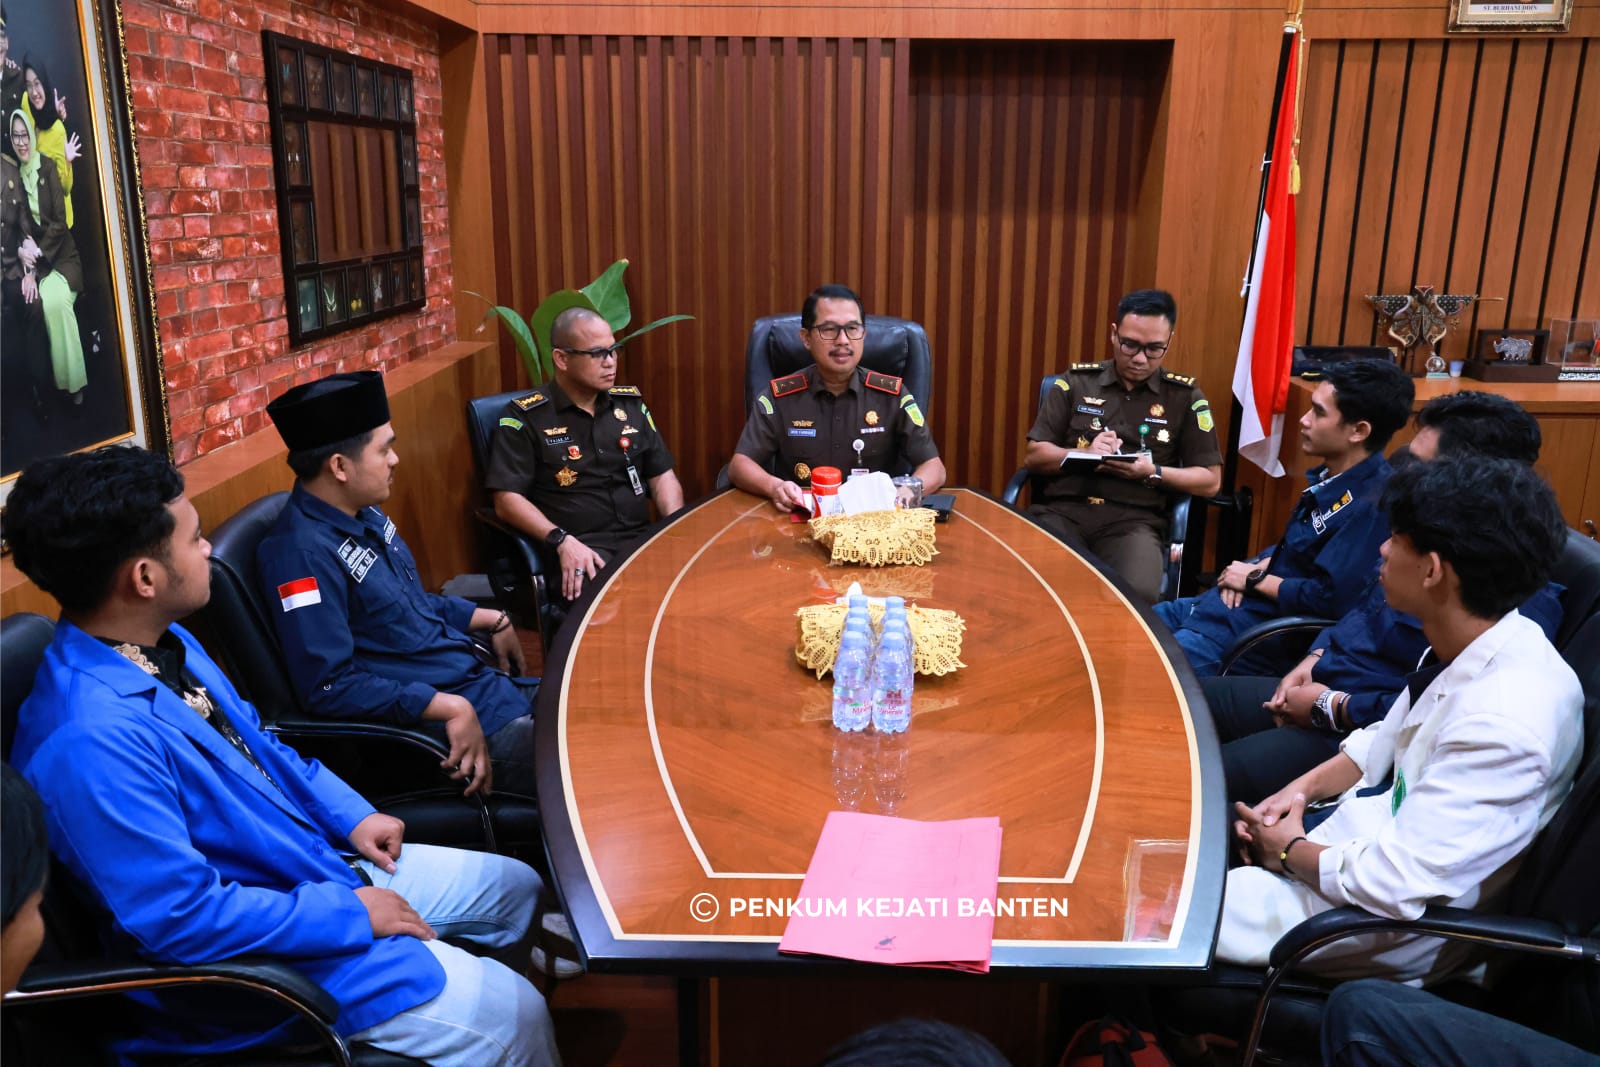 BEM Banten Bersatu Mendatangi Kejaksaan Tinggi Banten, Bahas Tersangka Kasus Situ Ranca Gede